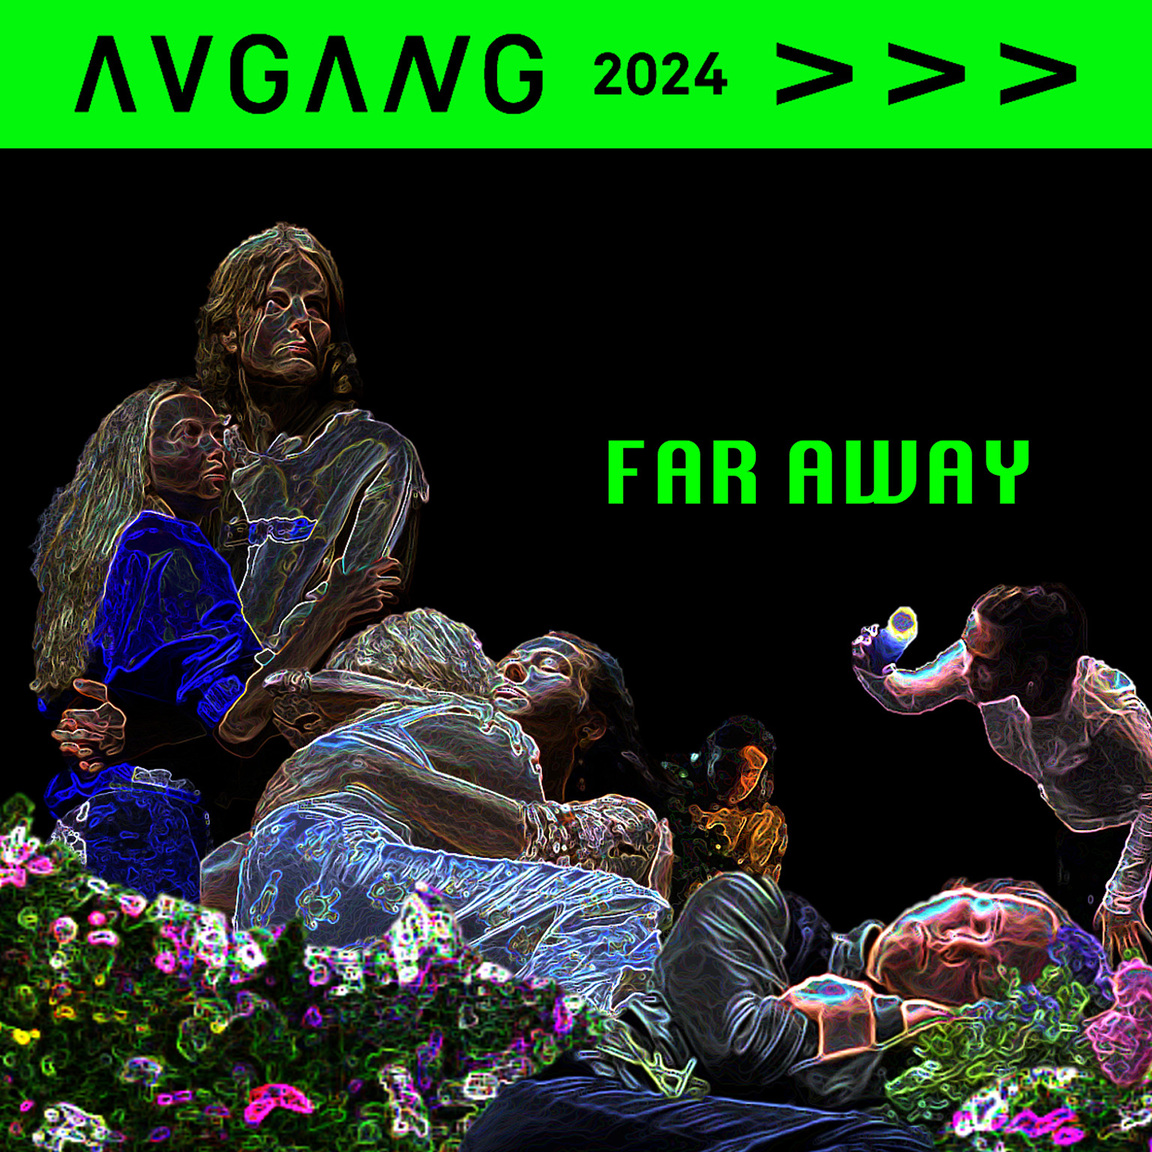 Avgang 2024: Far Away